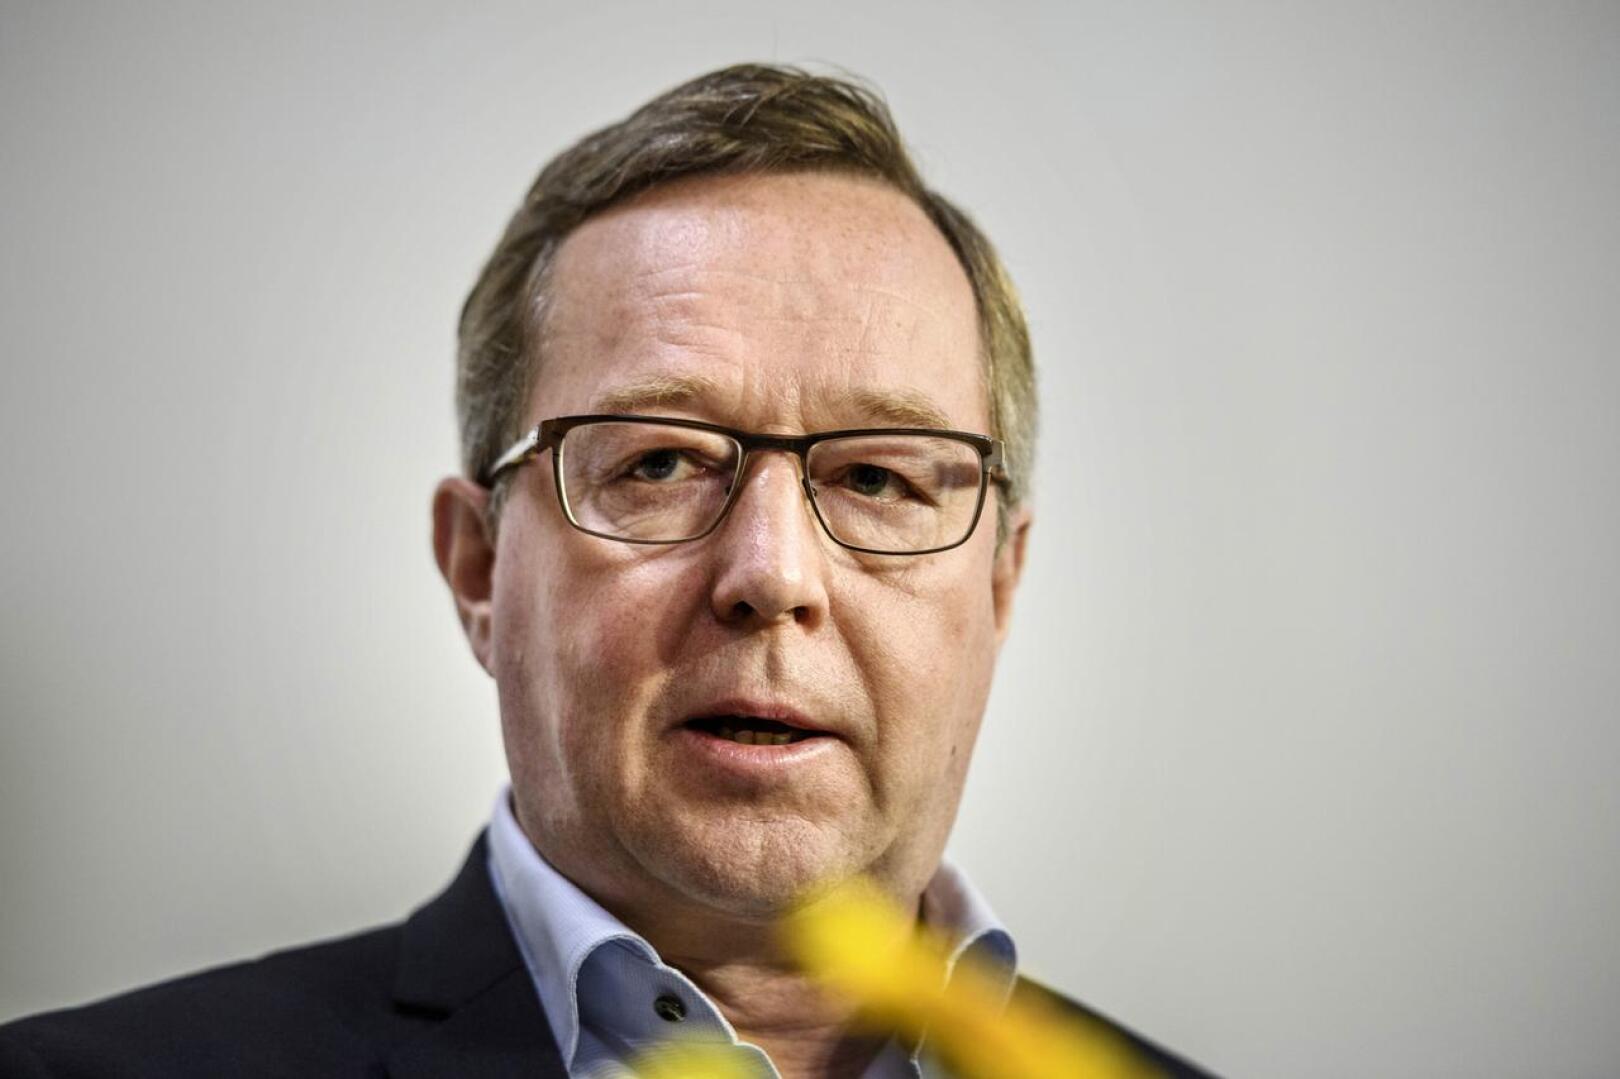 Elinkeinoministeri Mika Lintilä (kesk.) tienasi viime vuonna 158 000 euroa ansiotuloja.